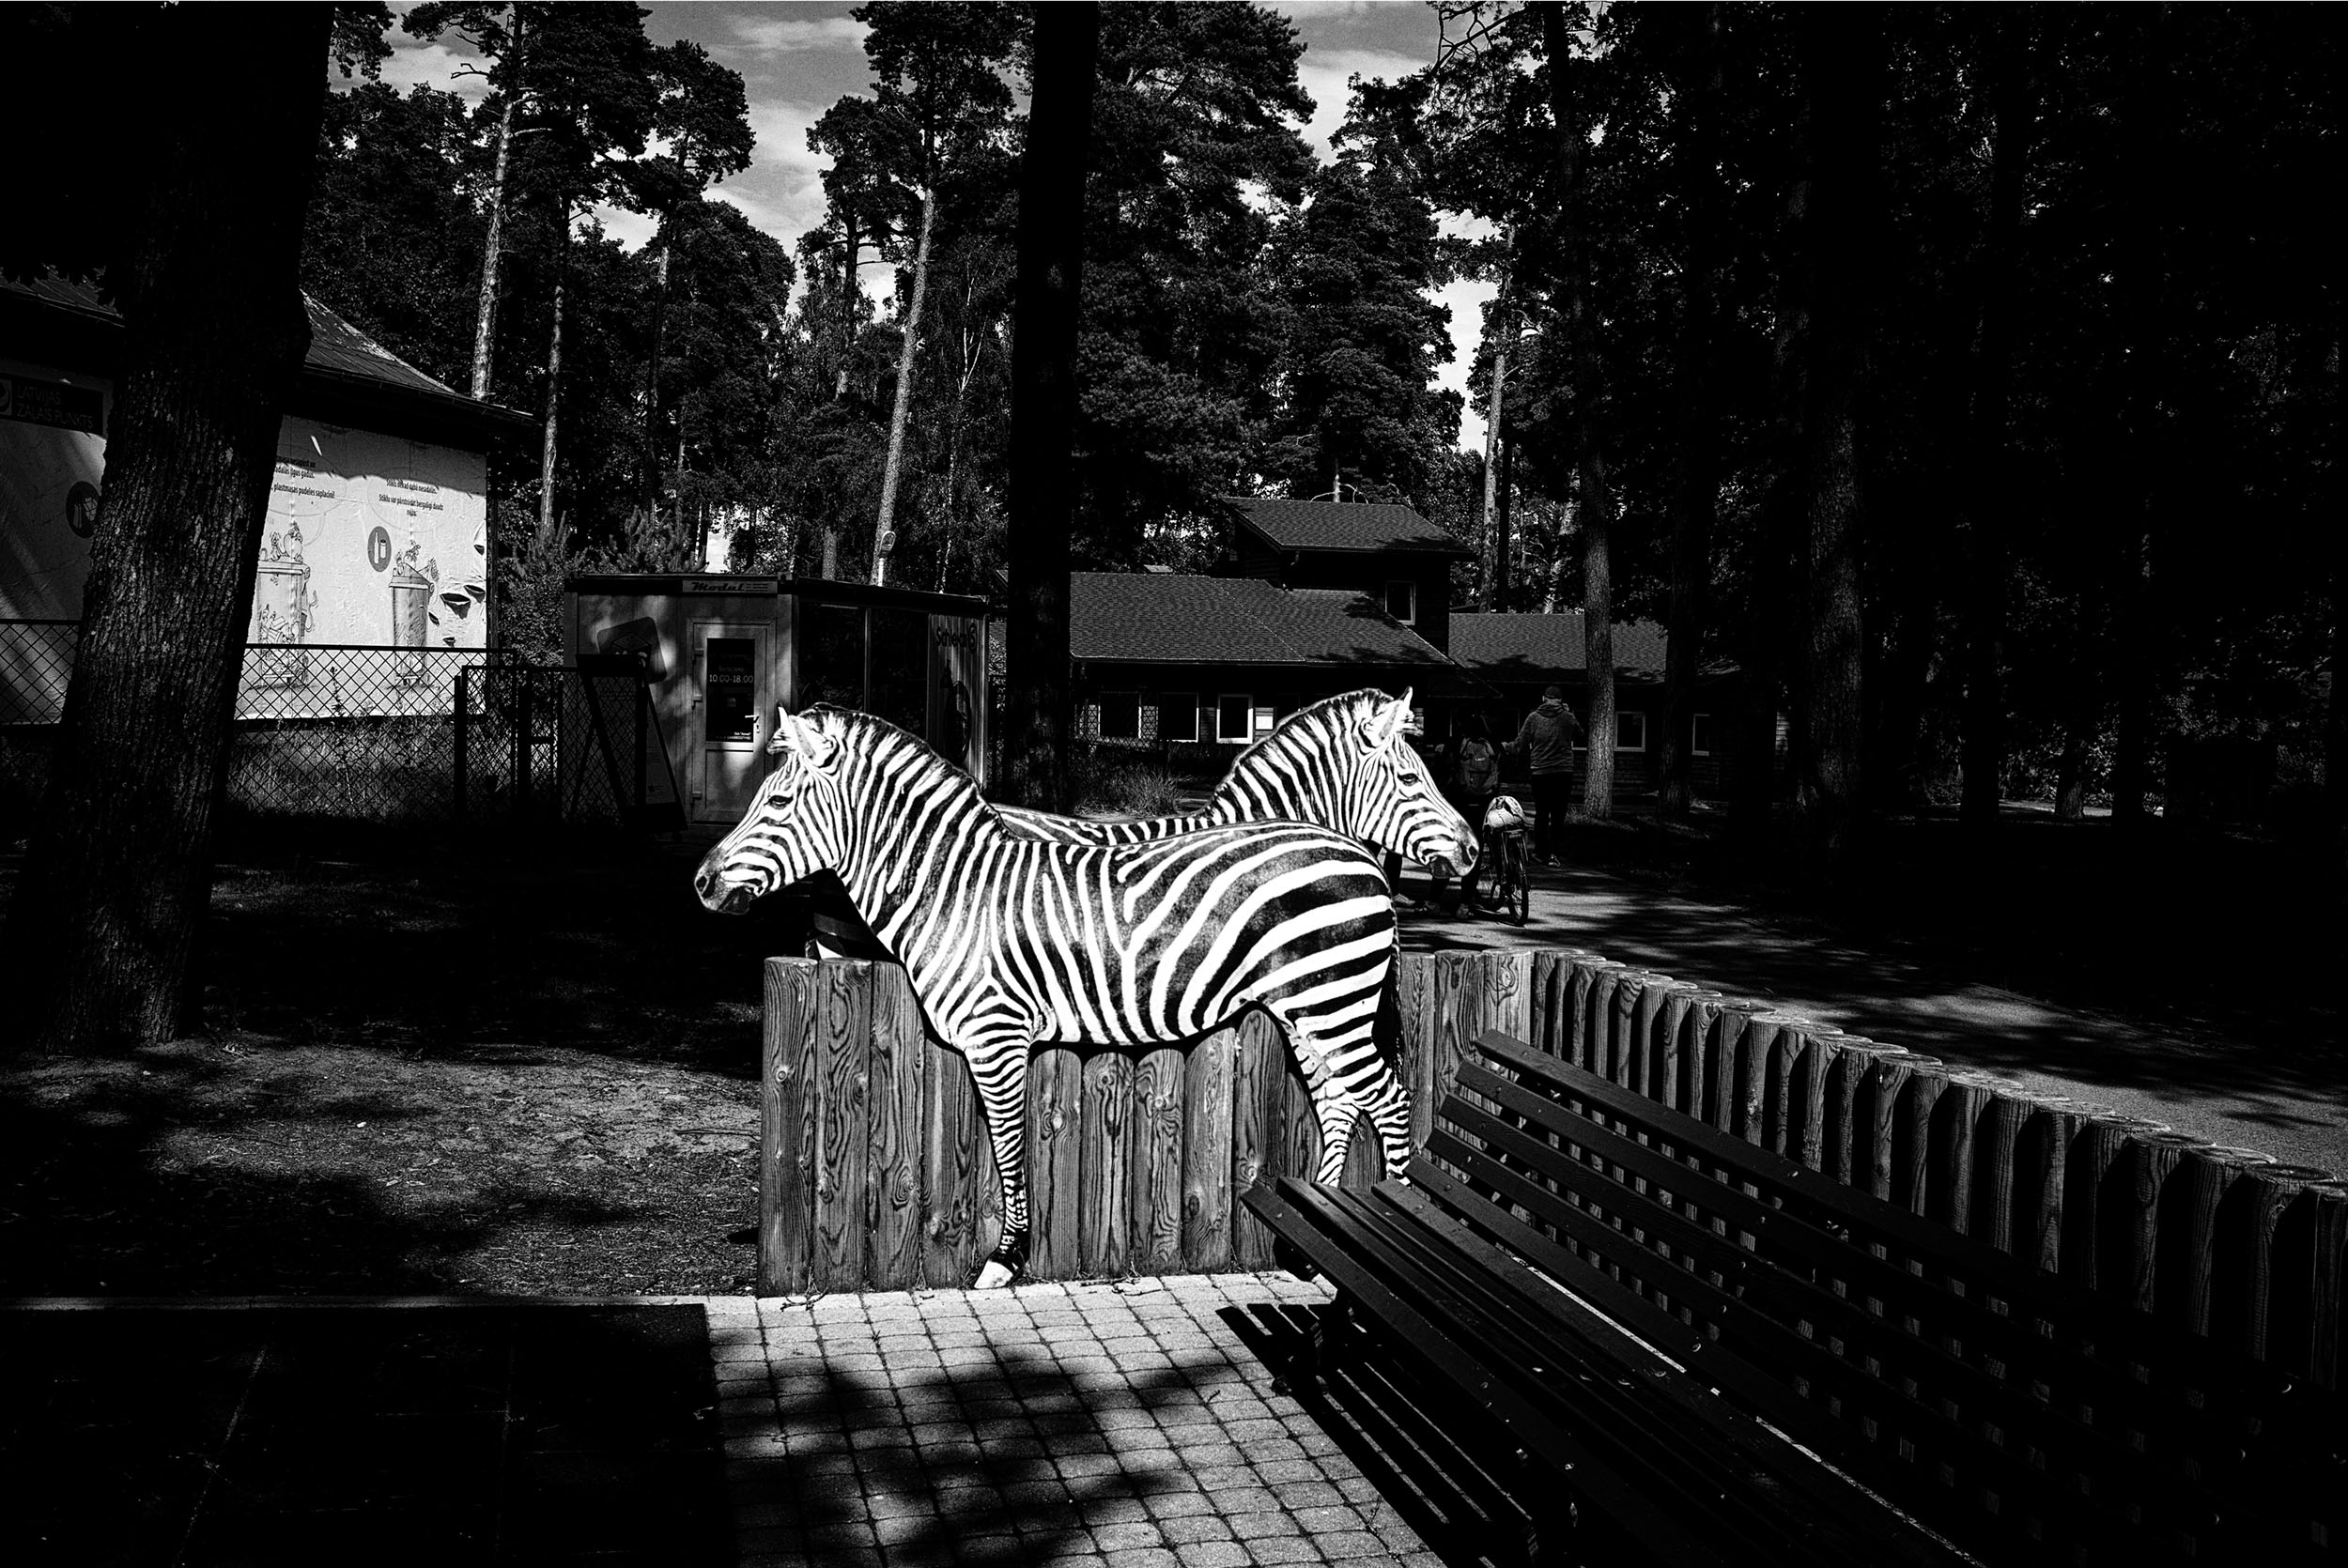 ALD03JUL19-5677-zoo-zebras2500pix.jpg